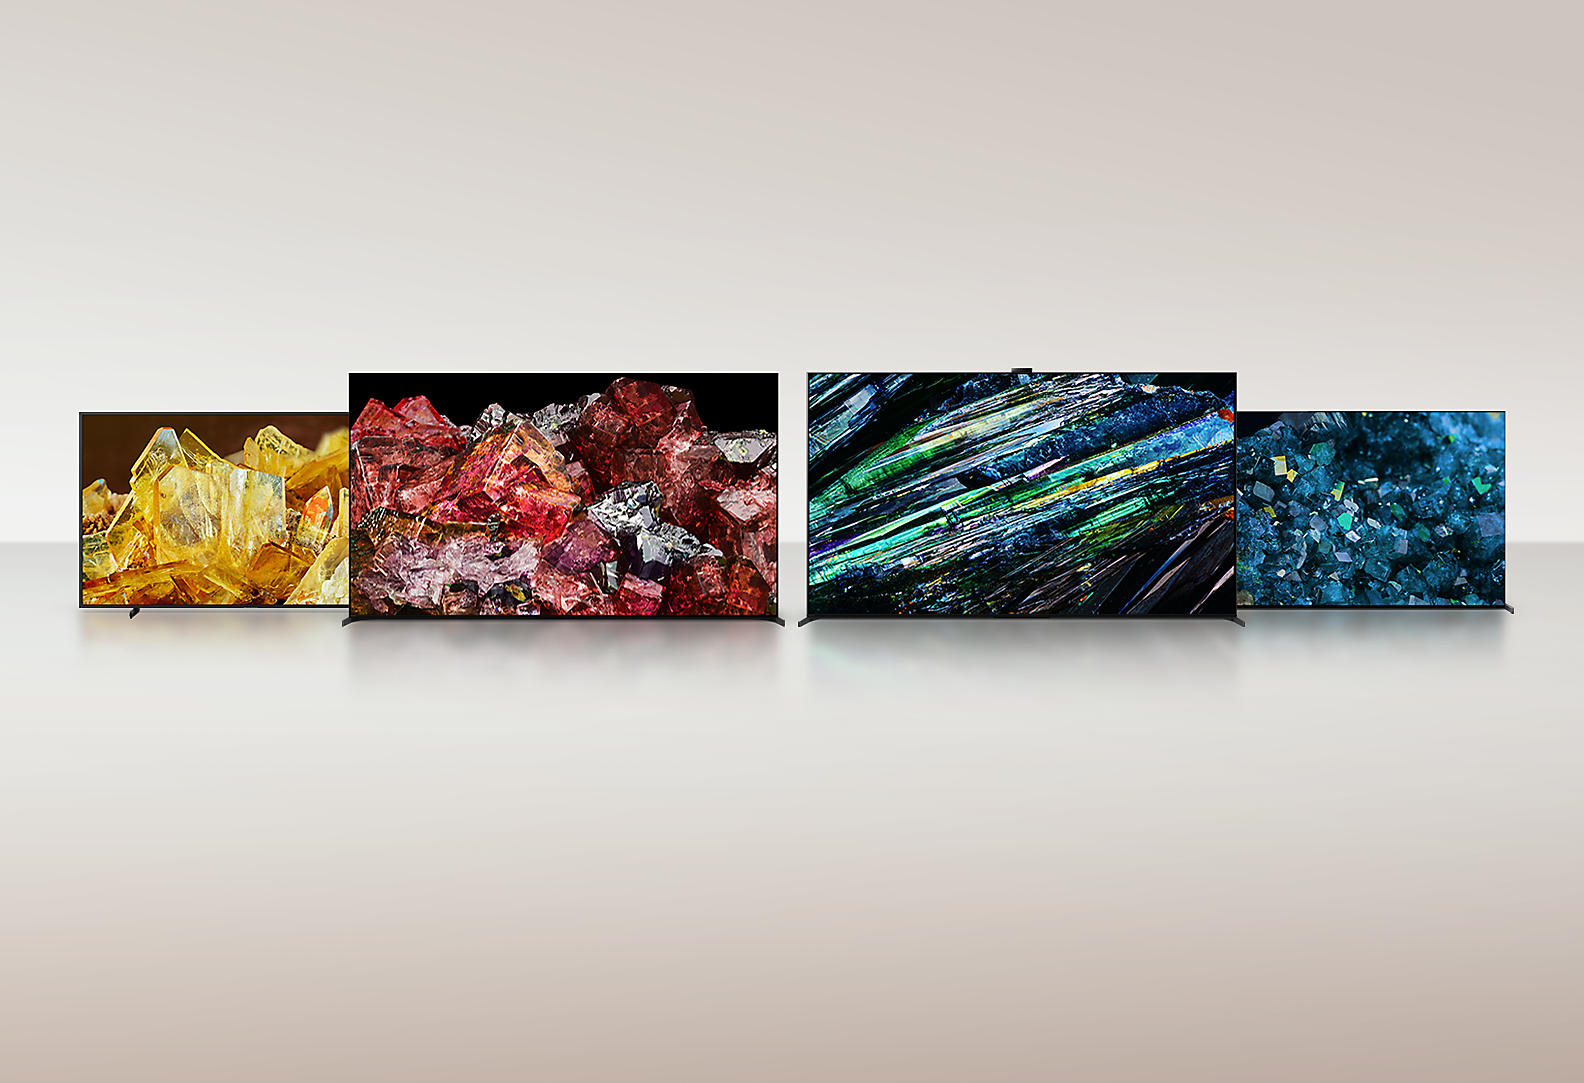 Cuatro televisiones BRAVIA XR que muestran imágenes en pantalla completa de diferentes tipos de cristales con colores y detalles increíbles